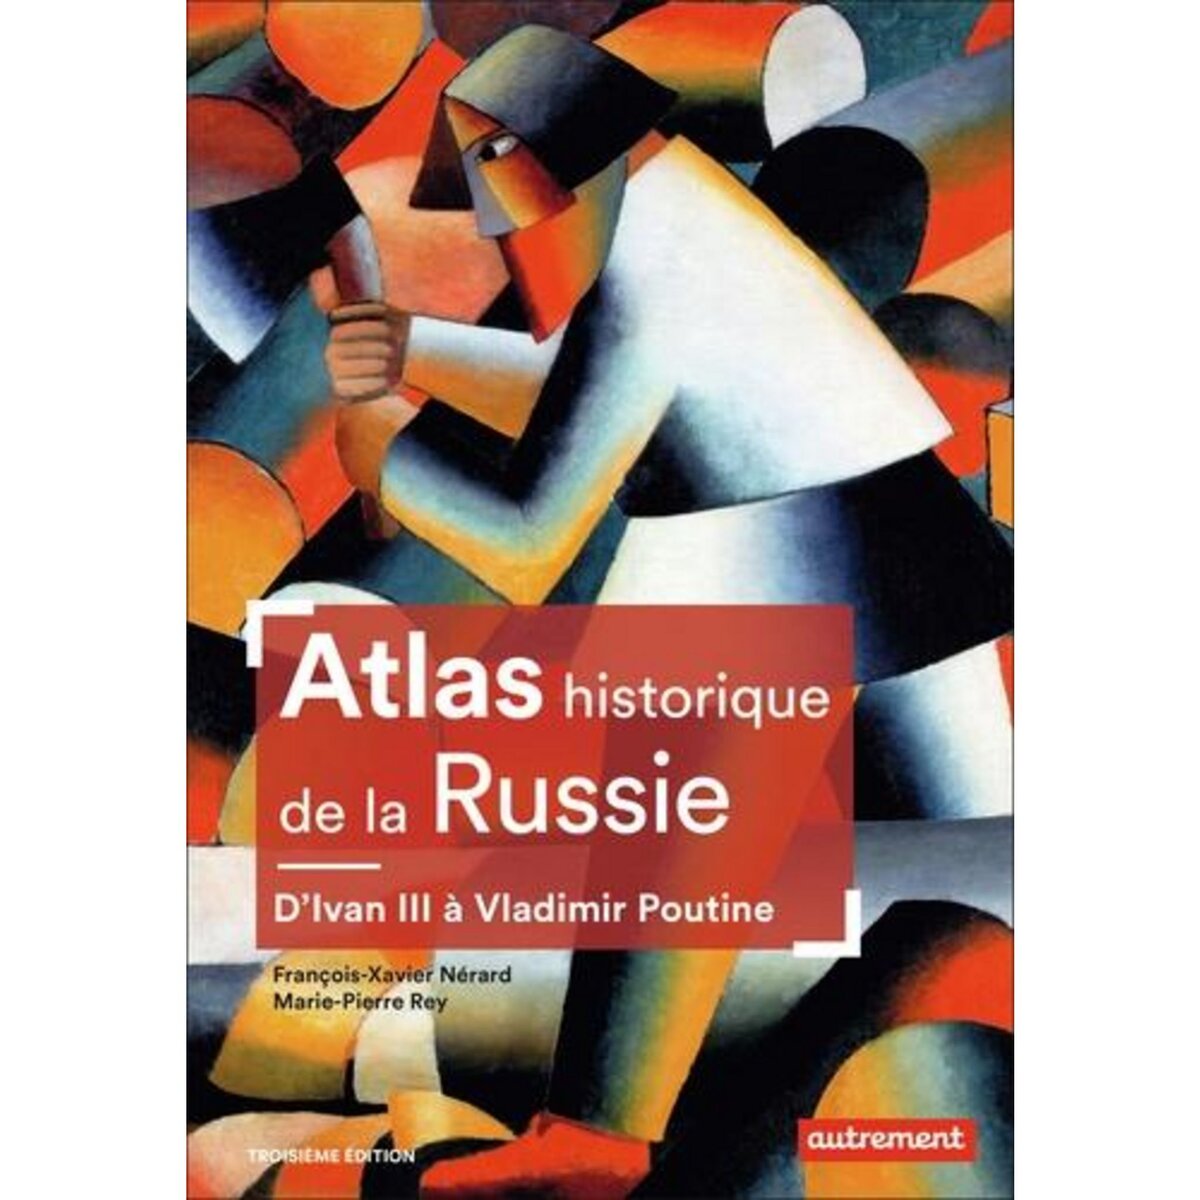  ATLAS HISTORIQUE DE LA RUSSIE. D'IVAN III A VLADIMIR POUTINE, 3E EDITION, Nérard François-Xavier